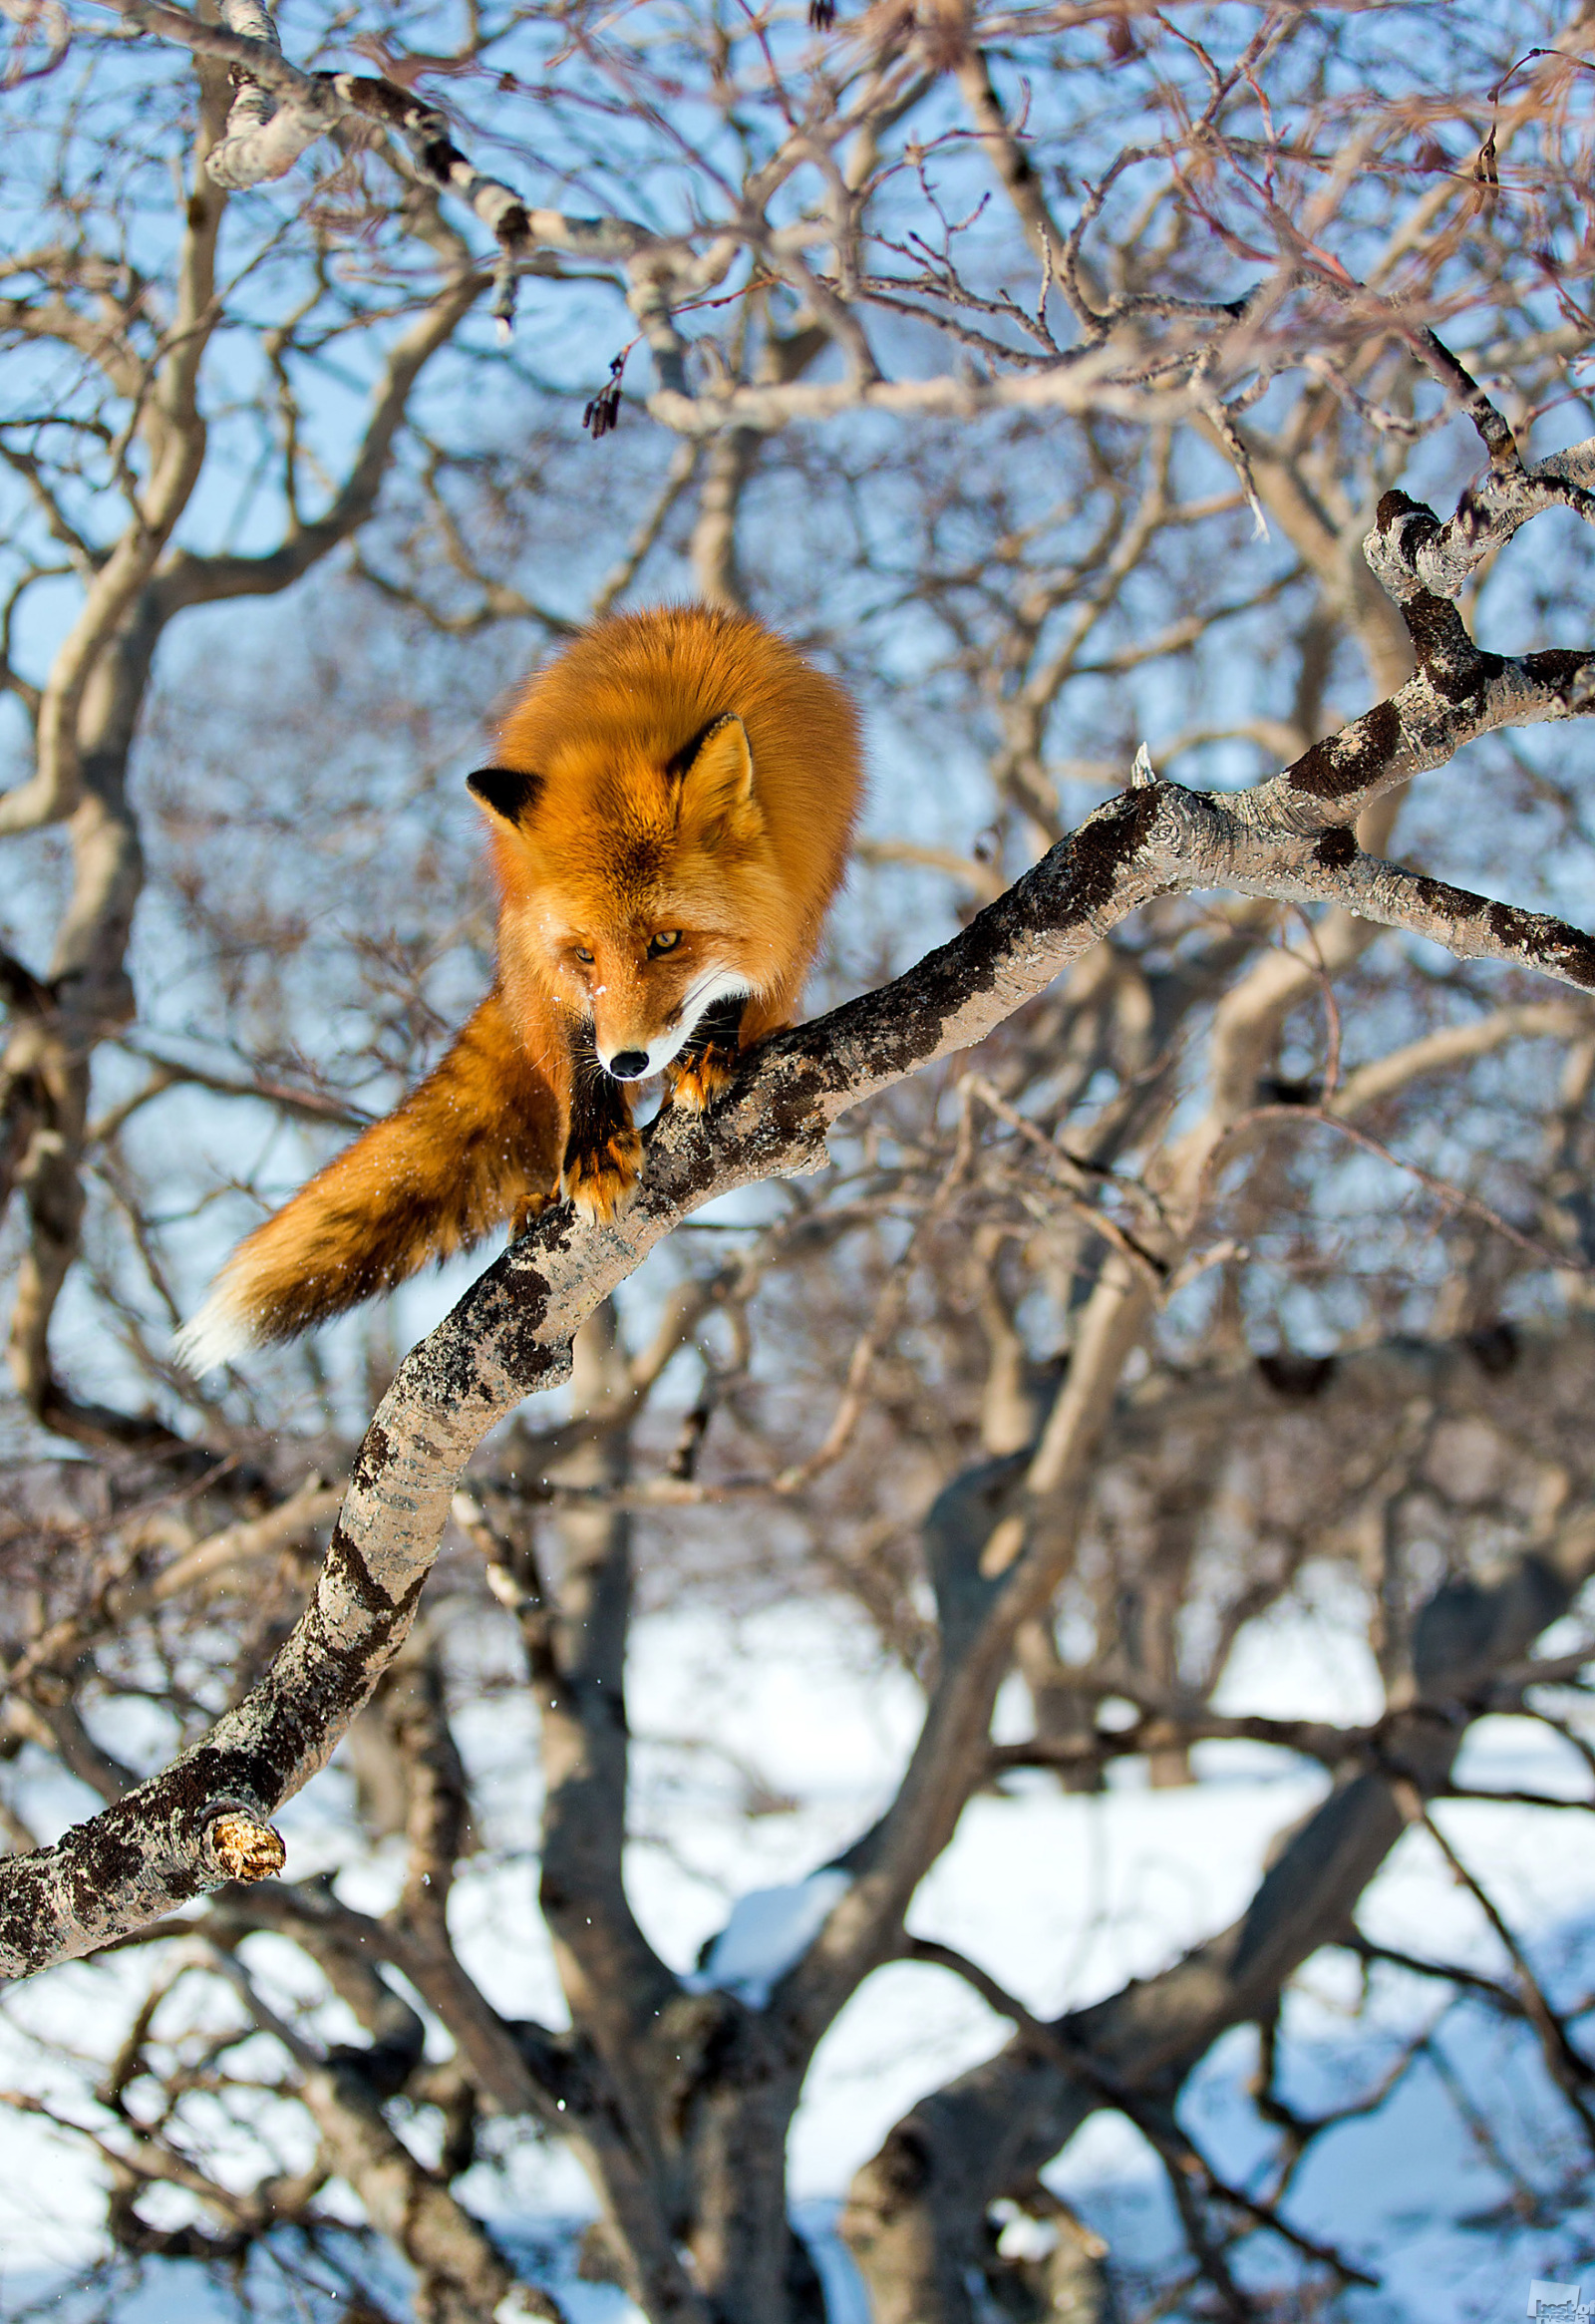 Das Kronozki-Biosphärenreservat, März 2013. Füchse können anscheinend klettern, vor allem, wenn der Baum leicht geneigt ist oder seine Zweige nicht so hoch über dem Boden hängen. Der Grazie nach zu schließen, mit der dieser Fuchs von Ast zu Ast springt, ist ihm dieser Sport sehr vertraut. Biosphärenreservat Kronozki, Region Kamtschatka